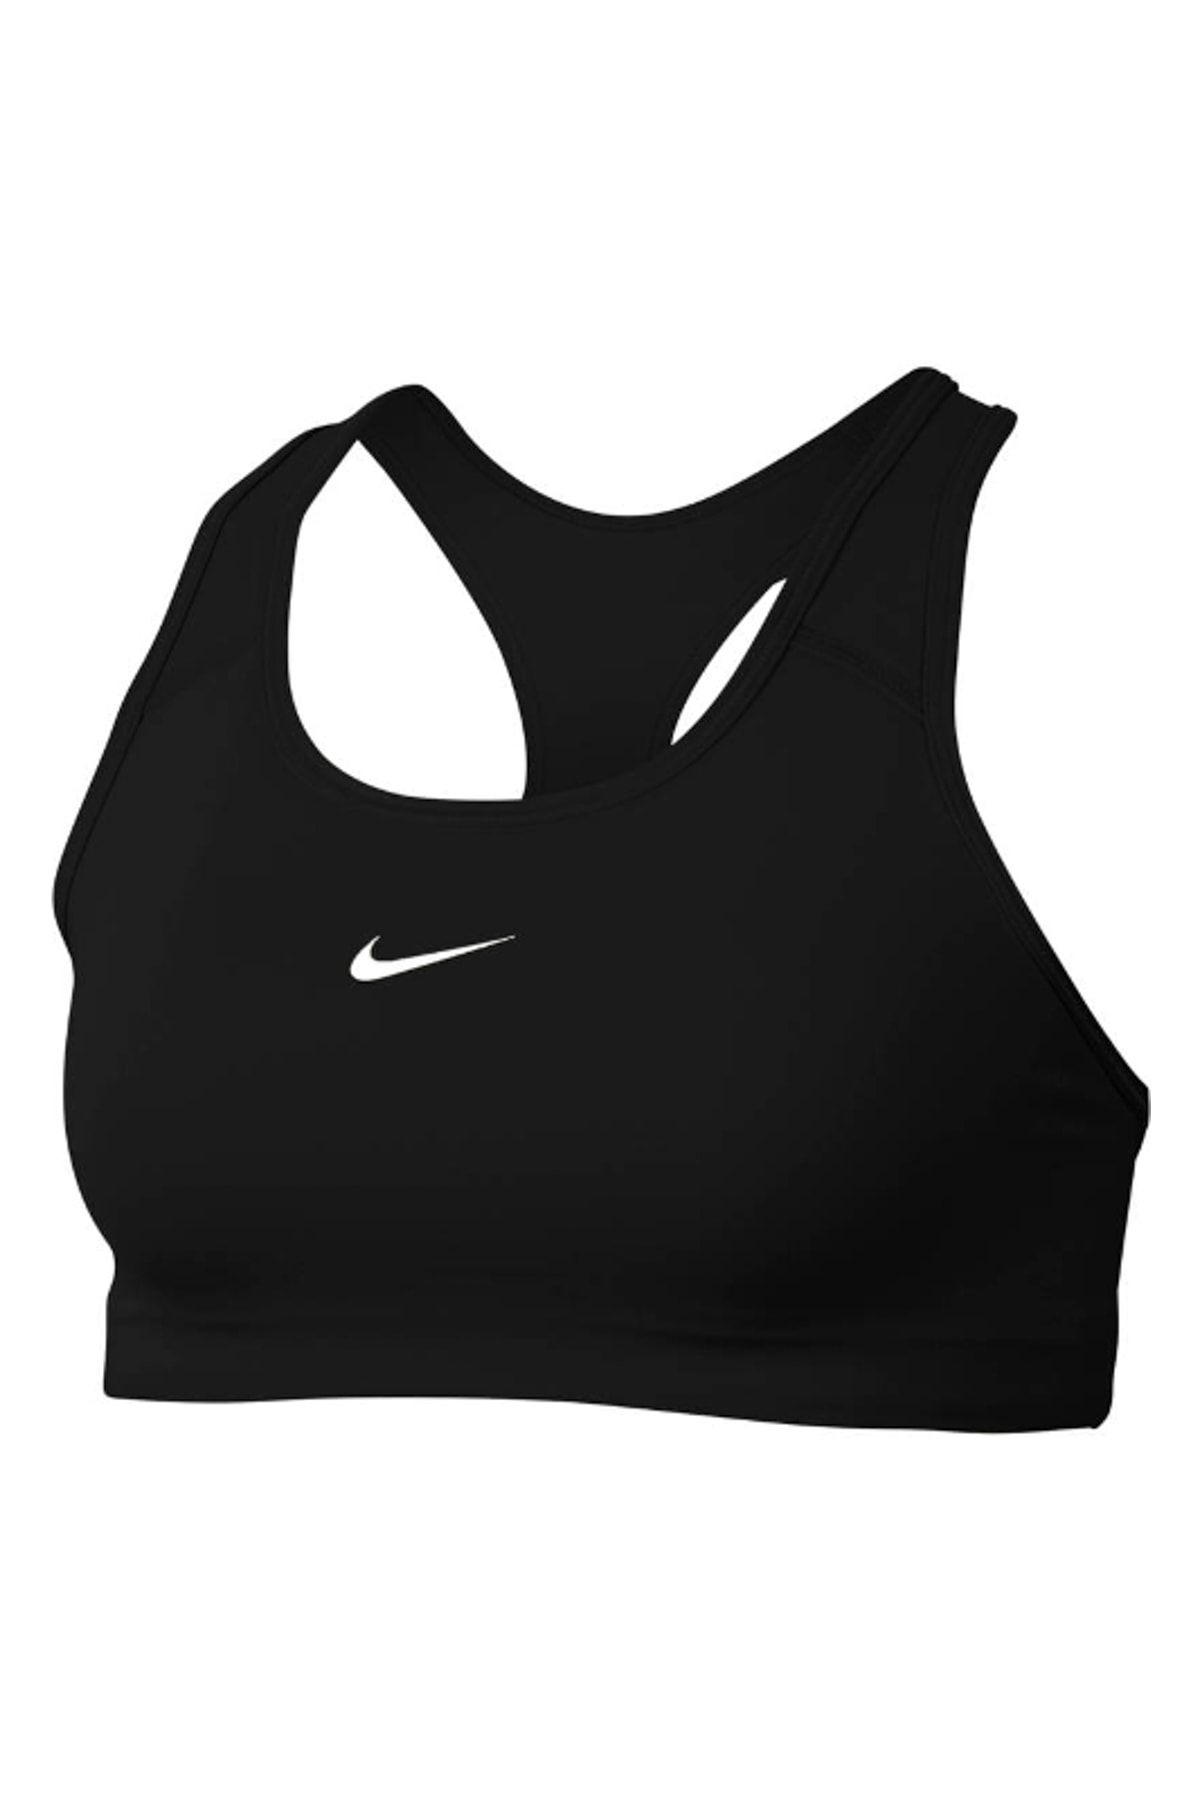 Nike Dri Fit Sports Bra Size 30D Run Walk Fitness Wire Free NWOT